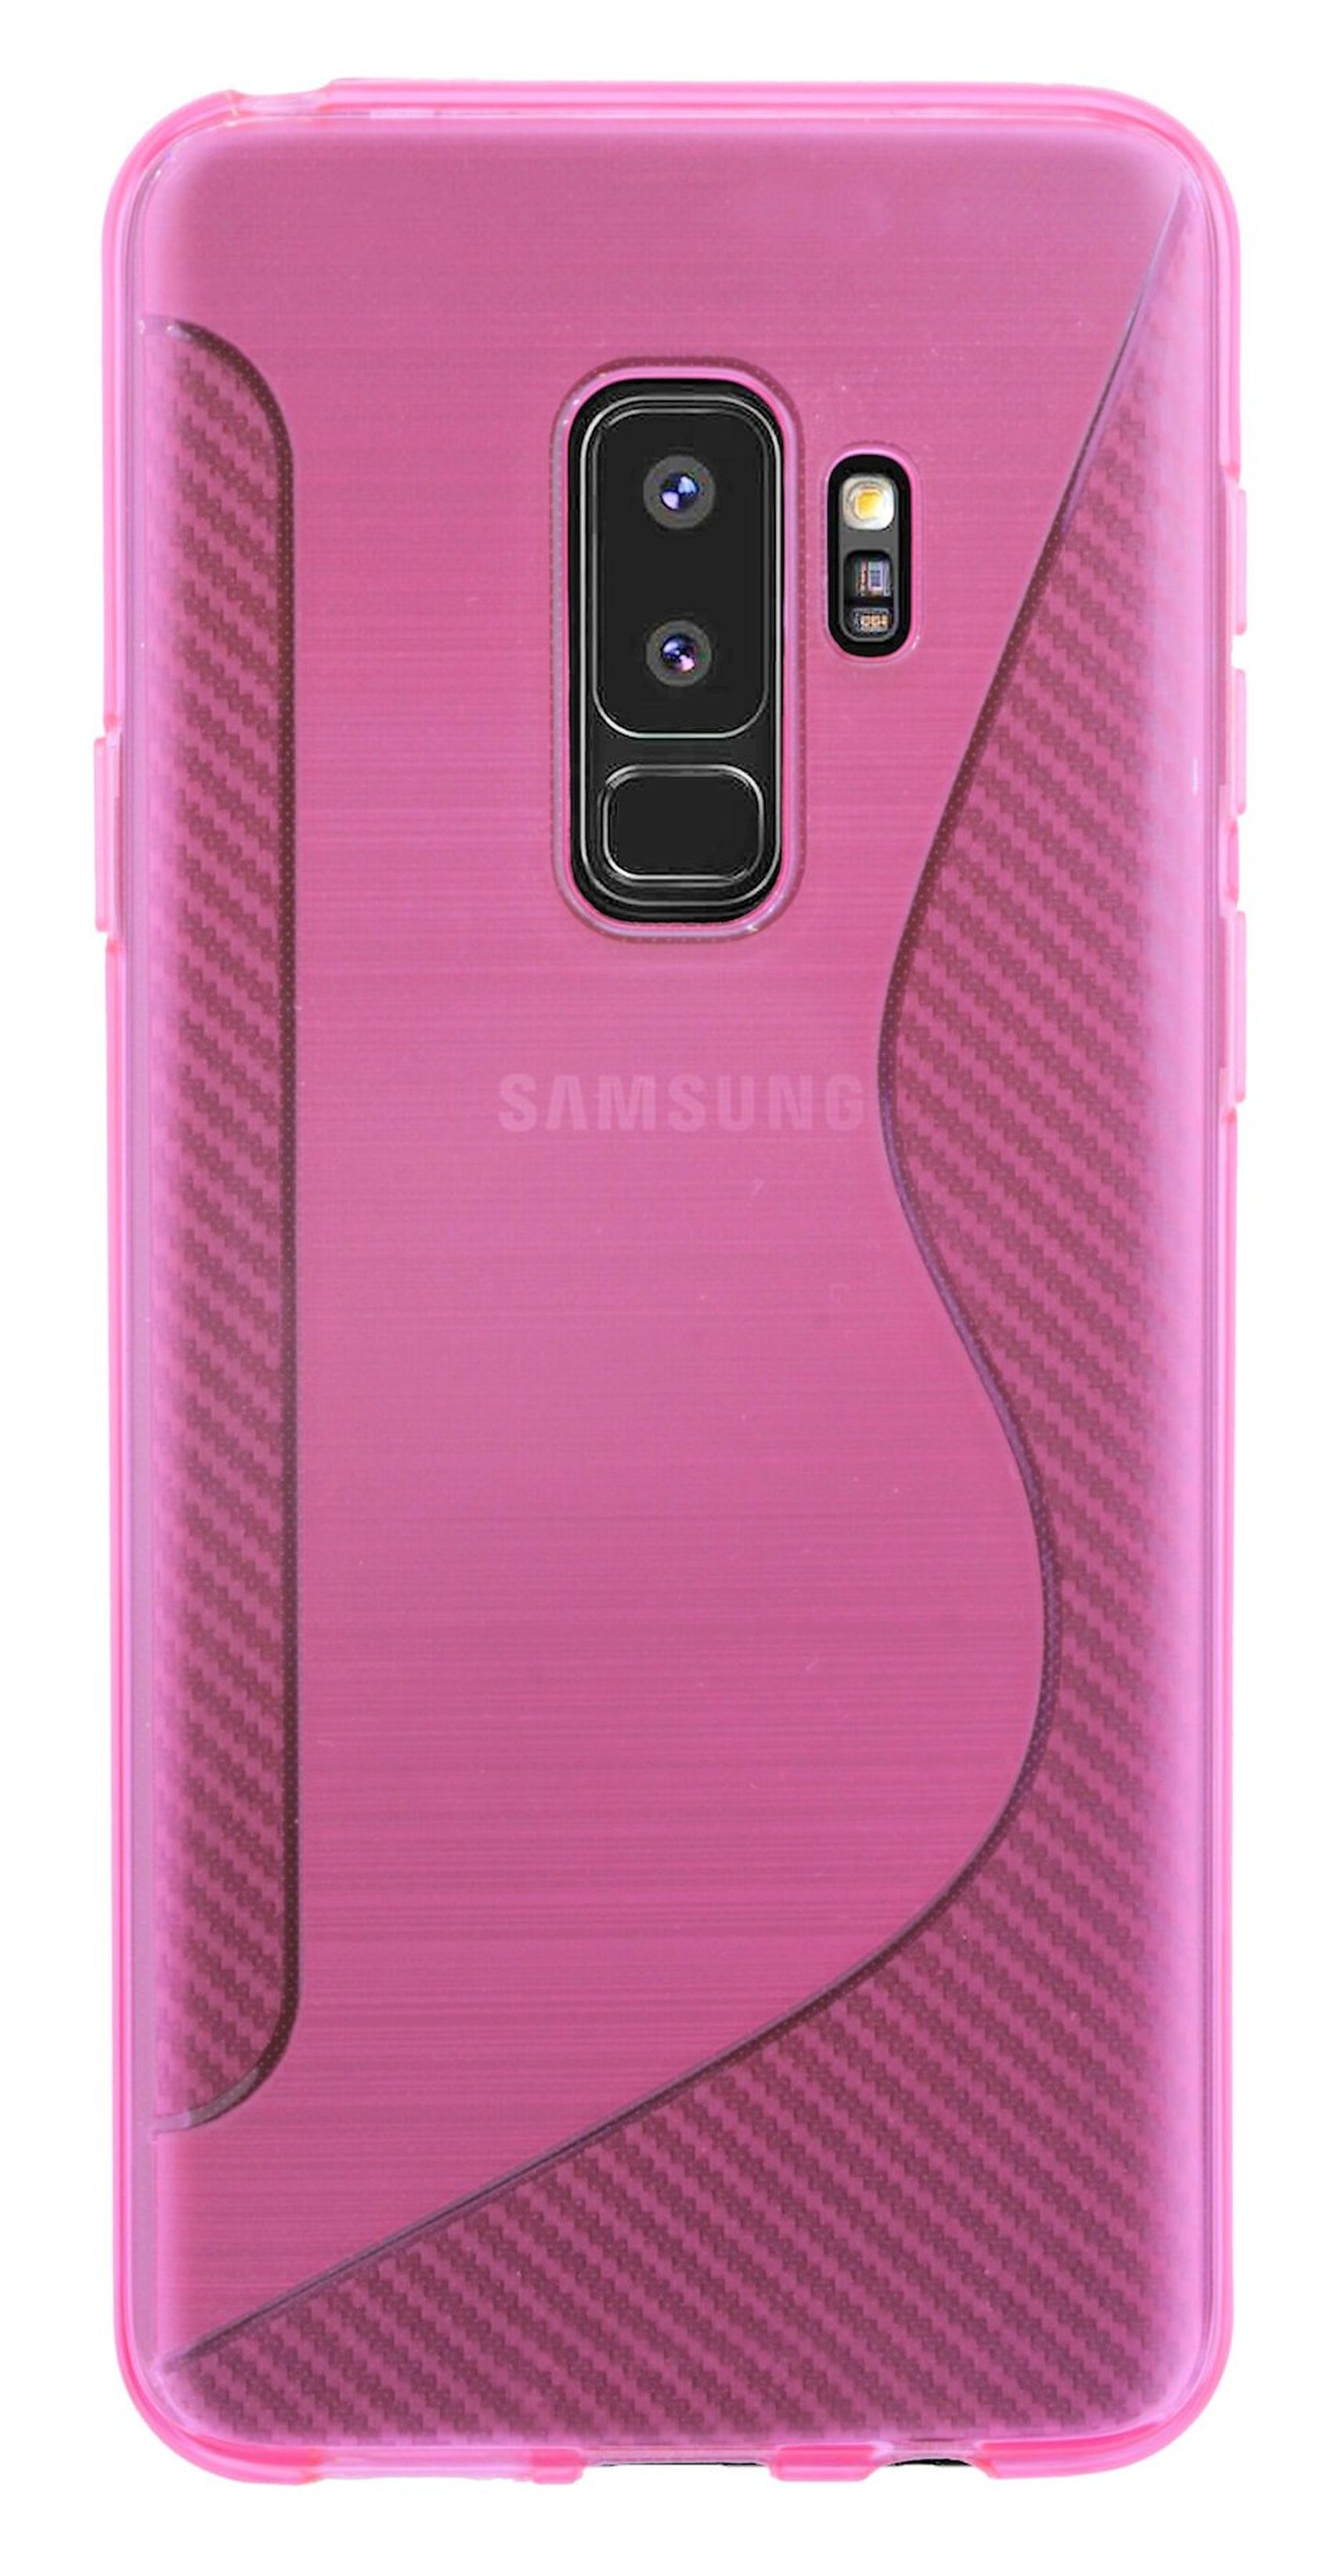 Bumper, COFI Galaxy Plus, Rosa Samsung, S9 Cover, S-Line